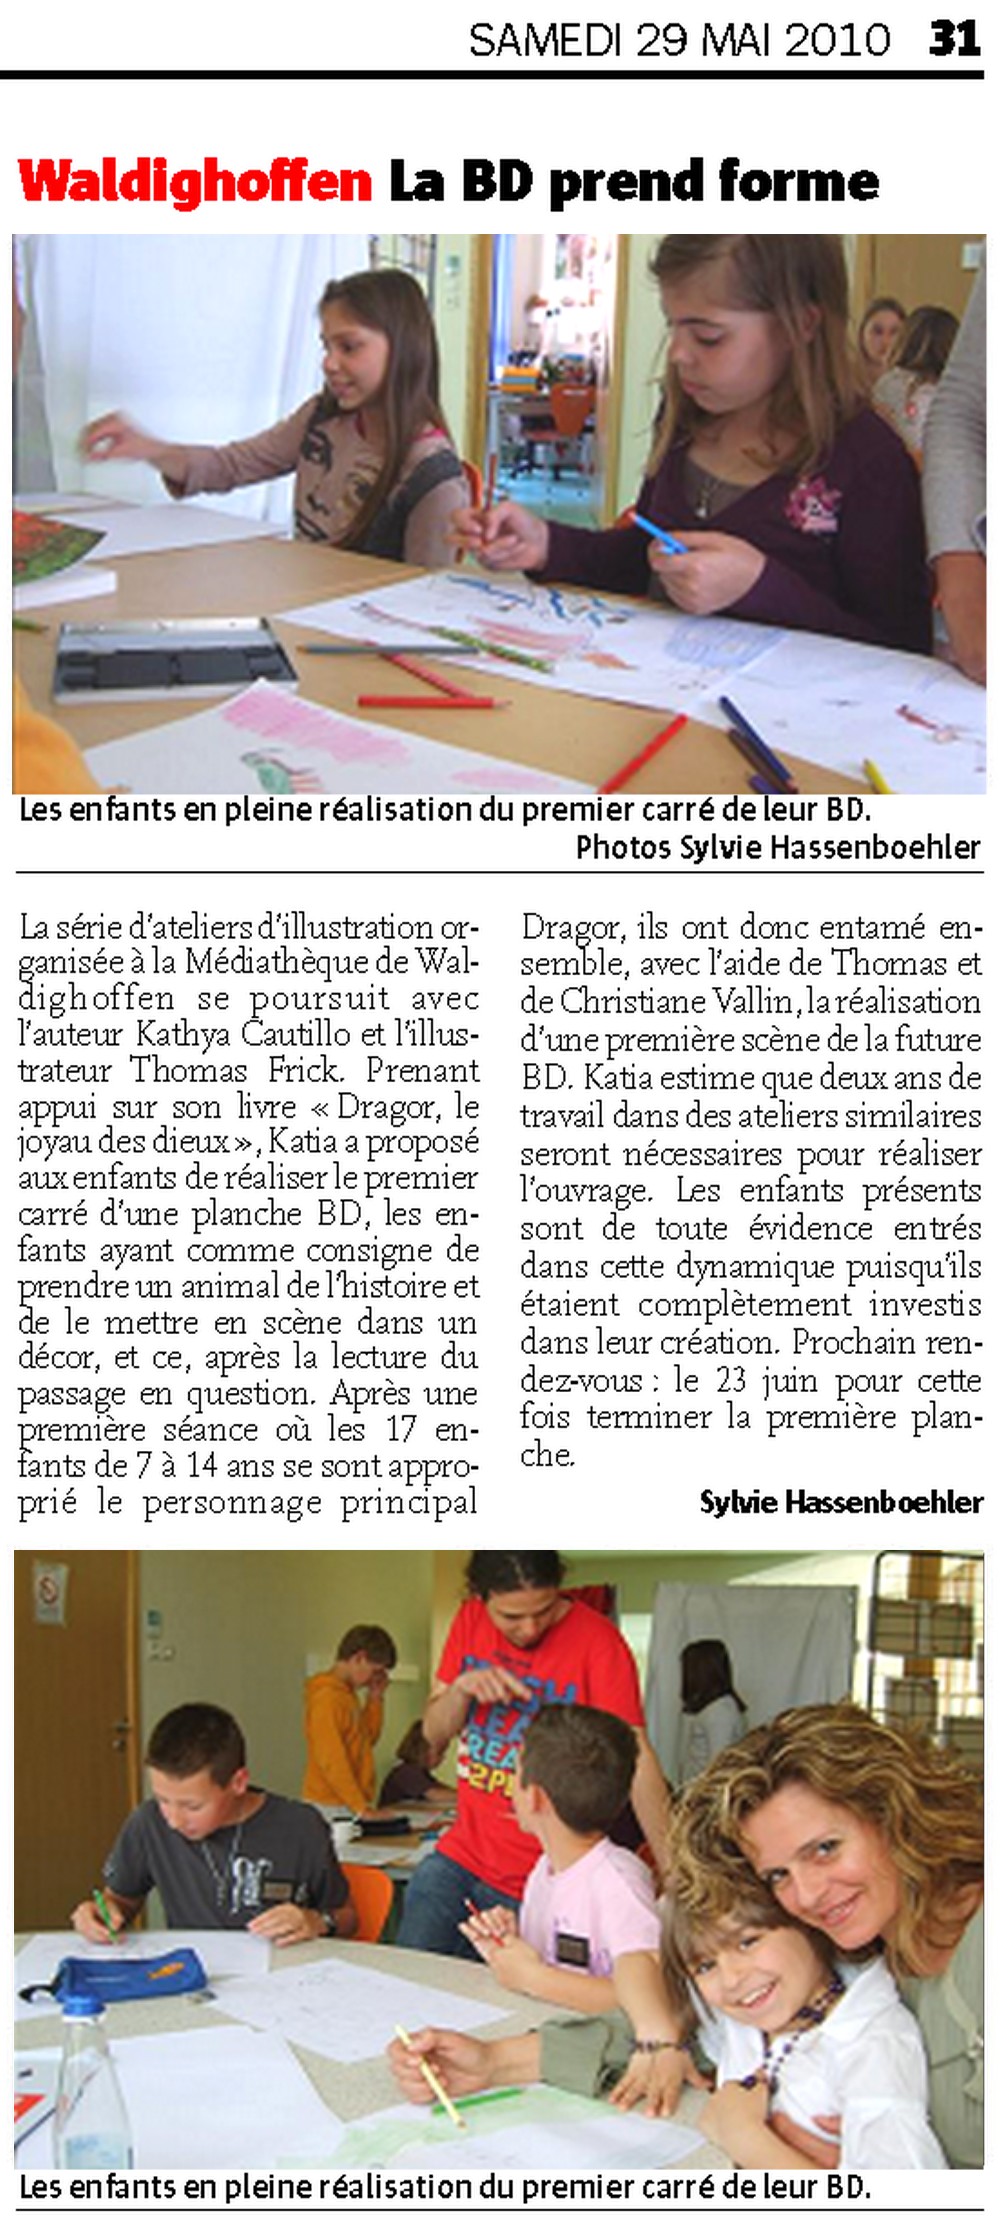 Article du journal l'Alsace du samedi 29 mai 2010 : la BD prend forme